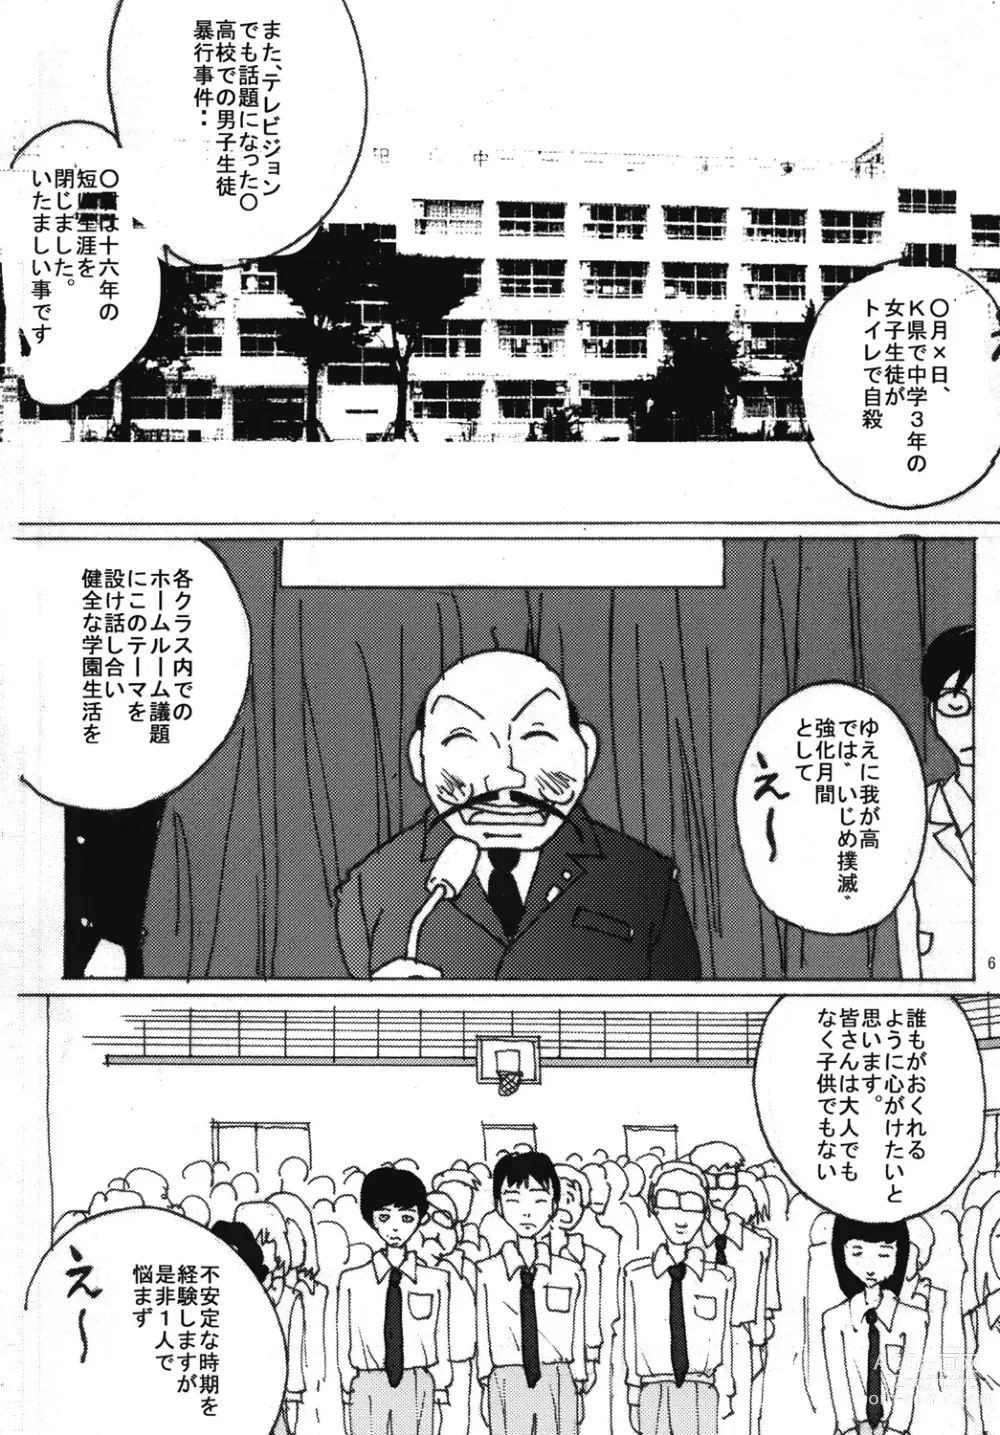 Page 5 of doujinshi Mune Ippai no Dizzy